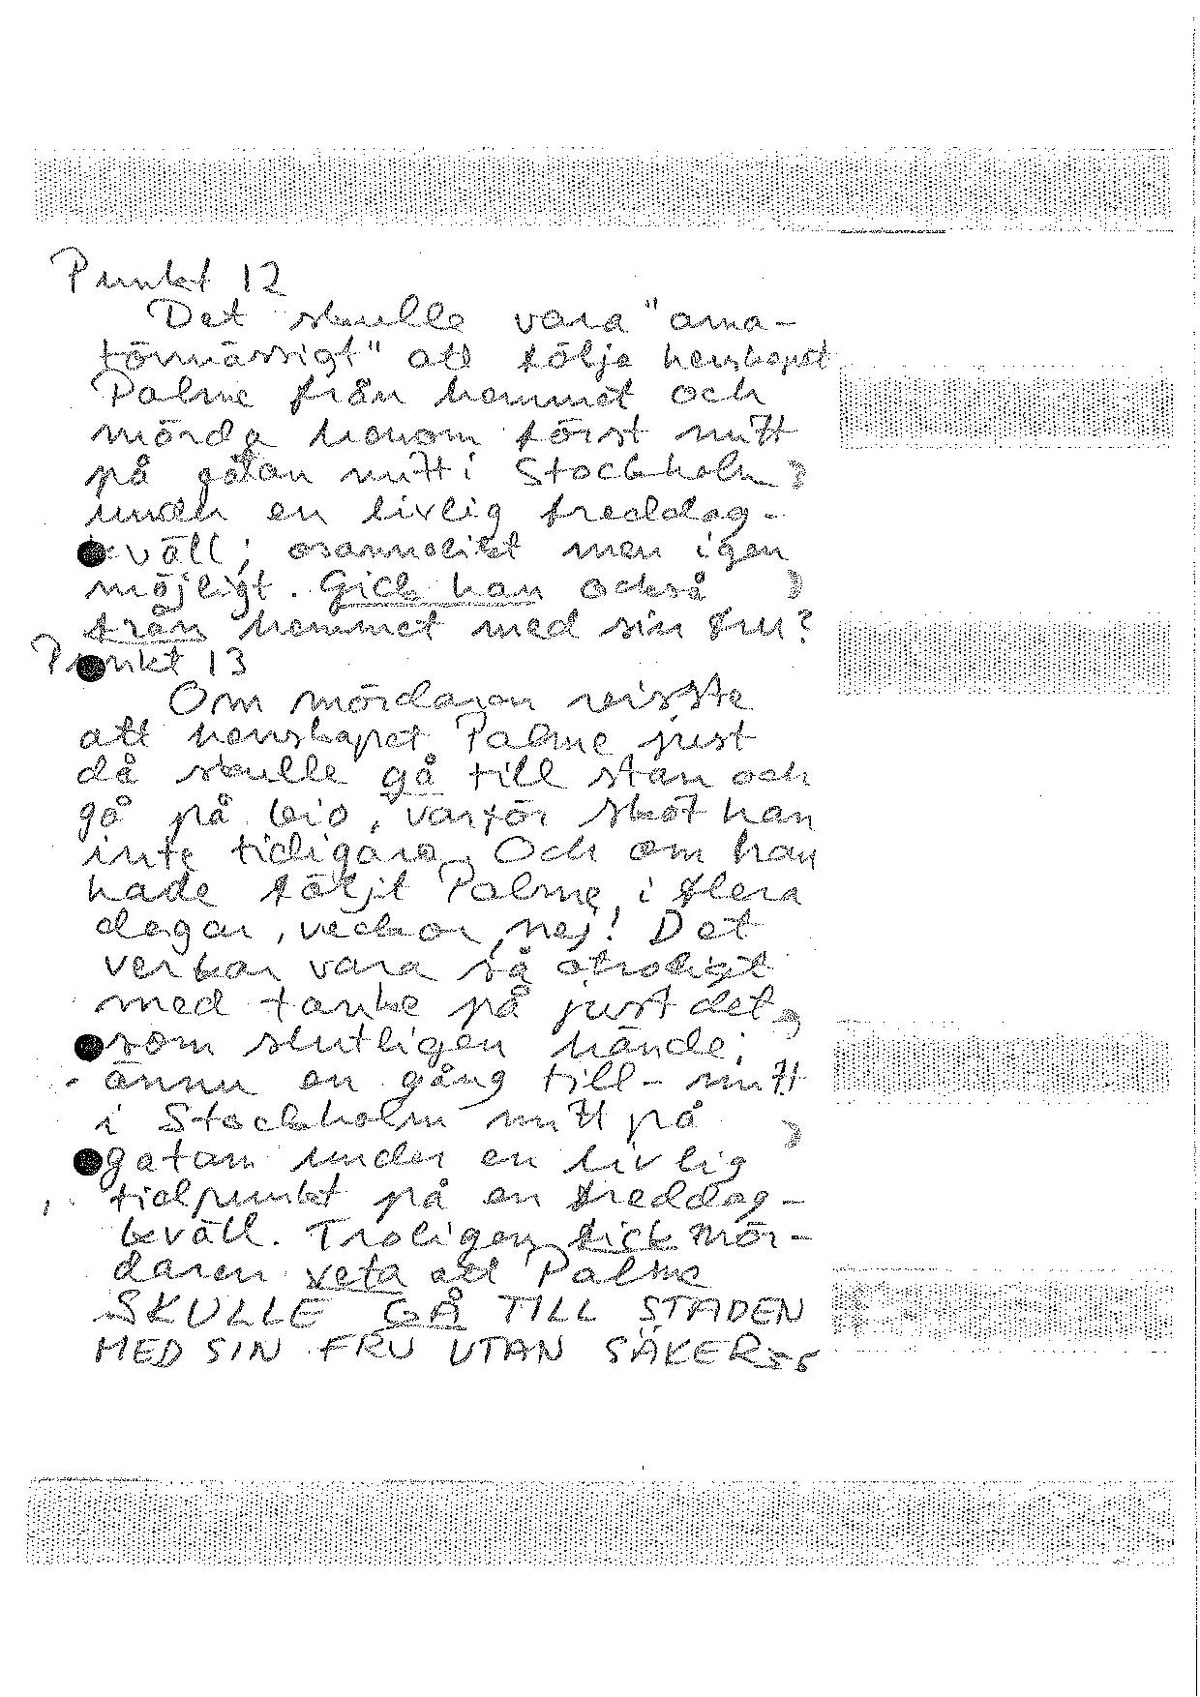 Pol-1986-03-05 D6224-00 Brev med tankar om mordet.pdf